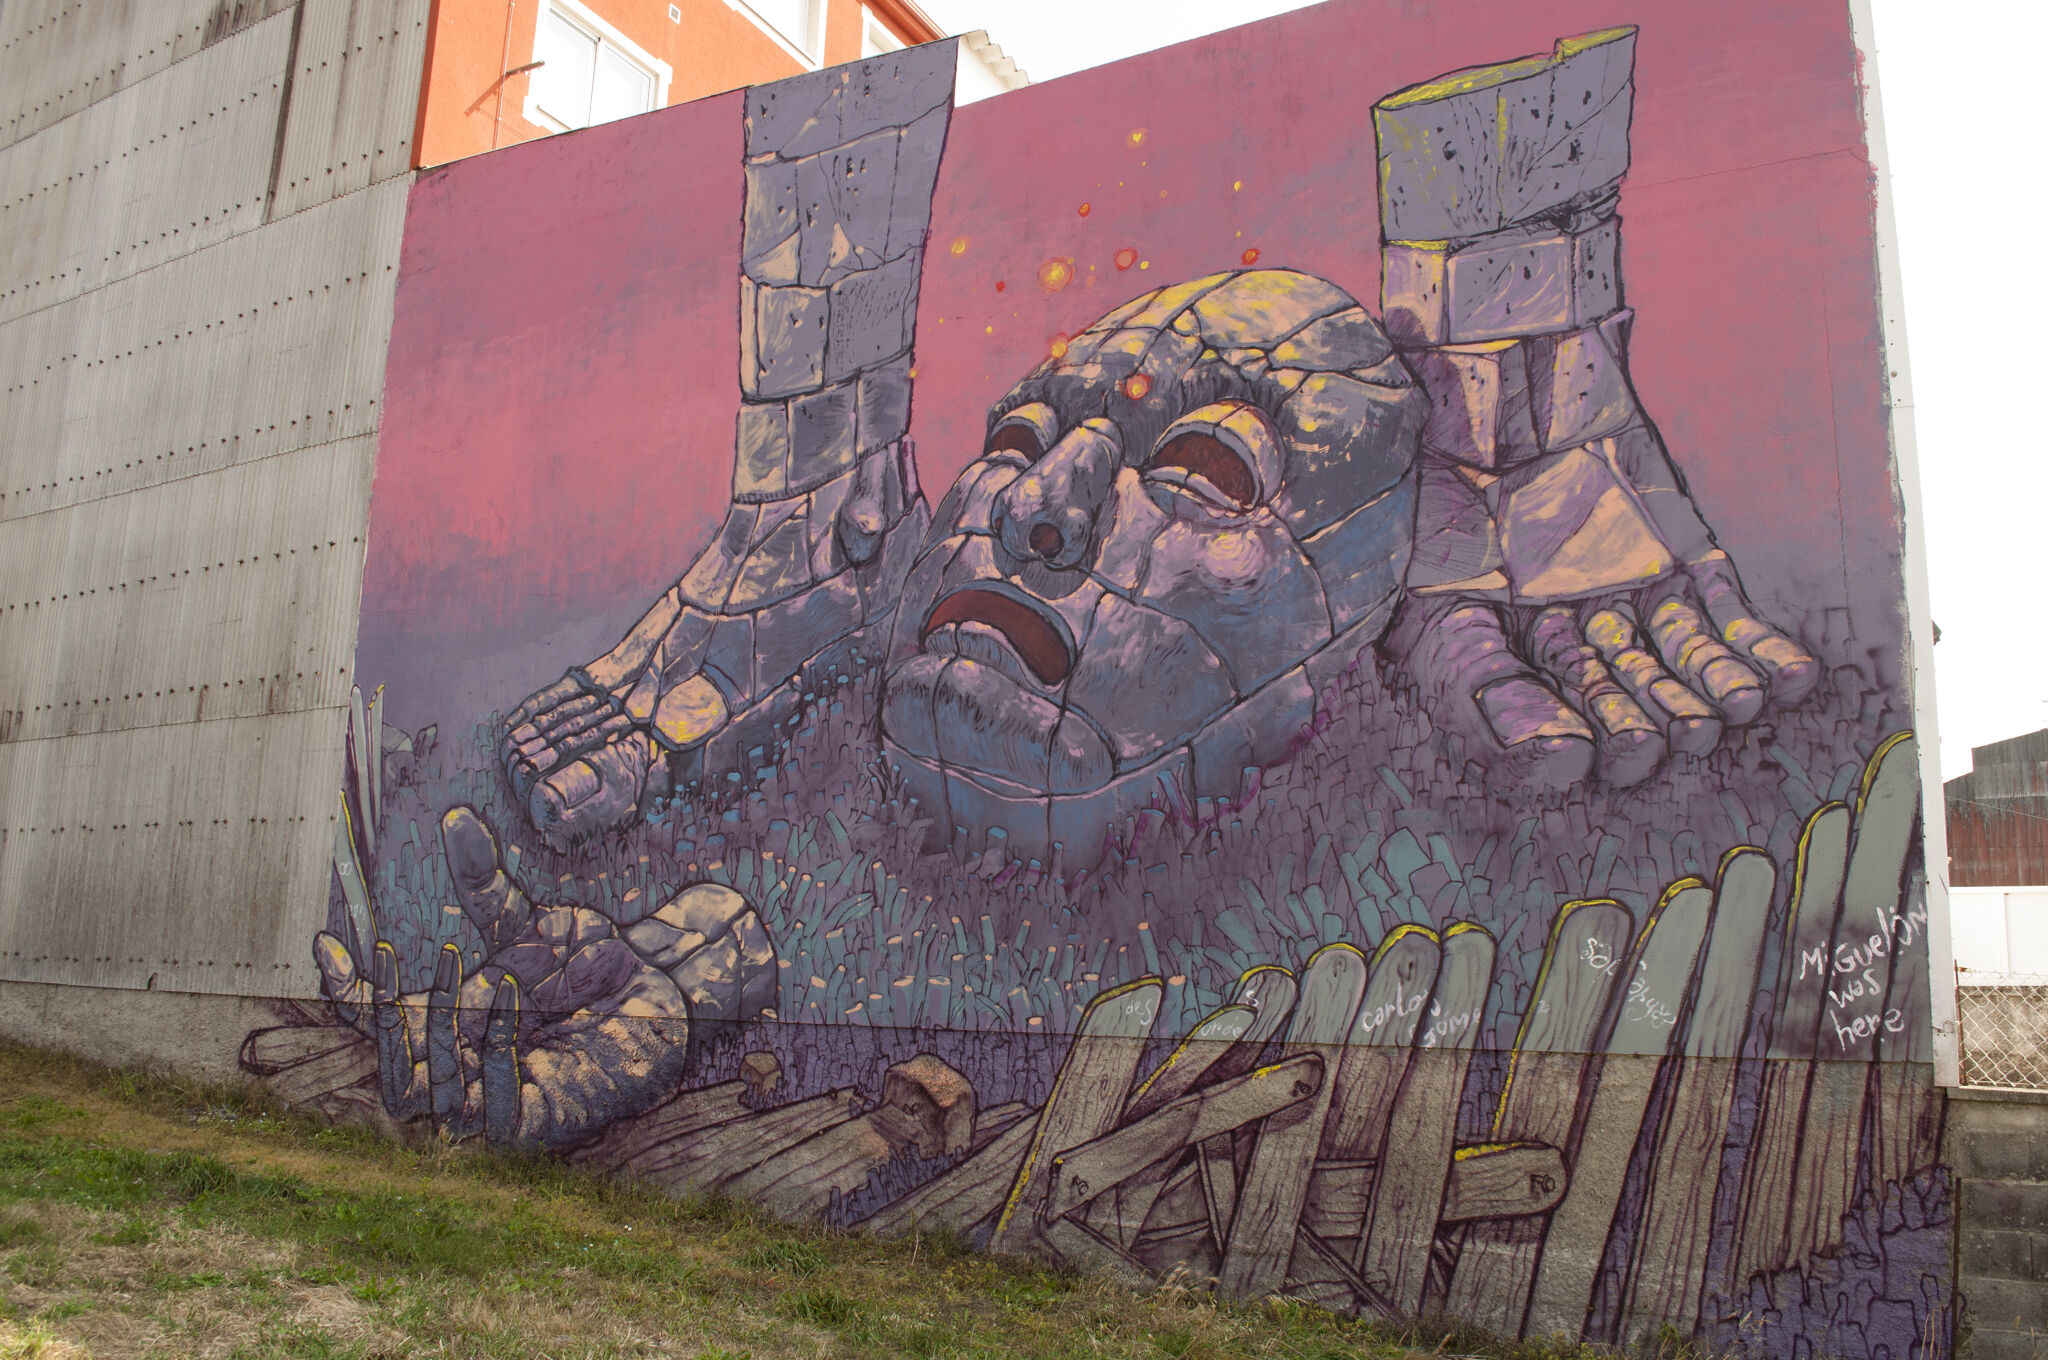 Carlos Goma&mdash;Wall by CARLOS GOMA for DESORDES CREATIVAS 2017  in Ordes (Galicia, Spain)